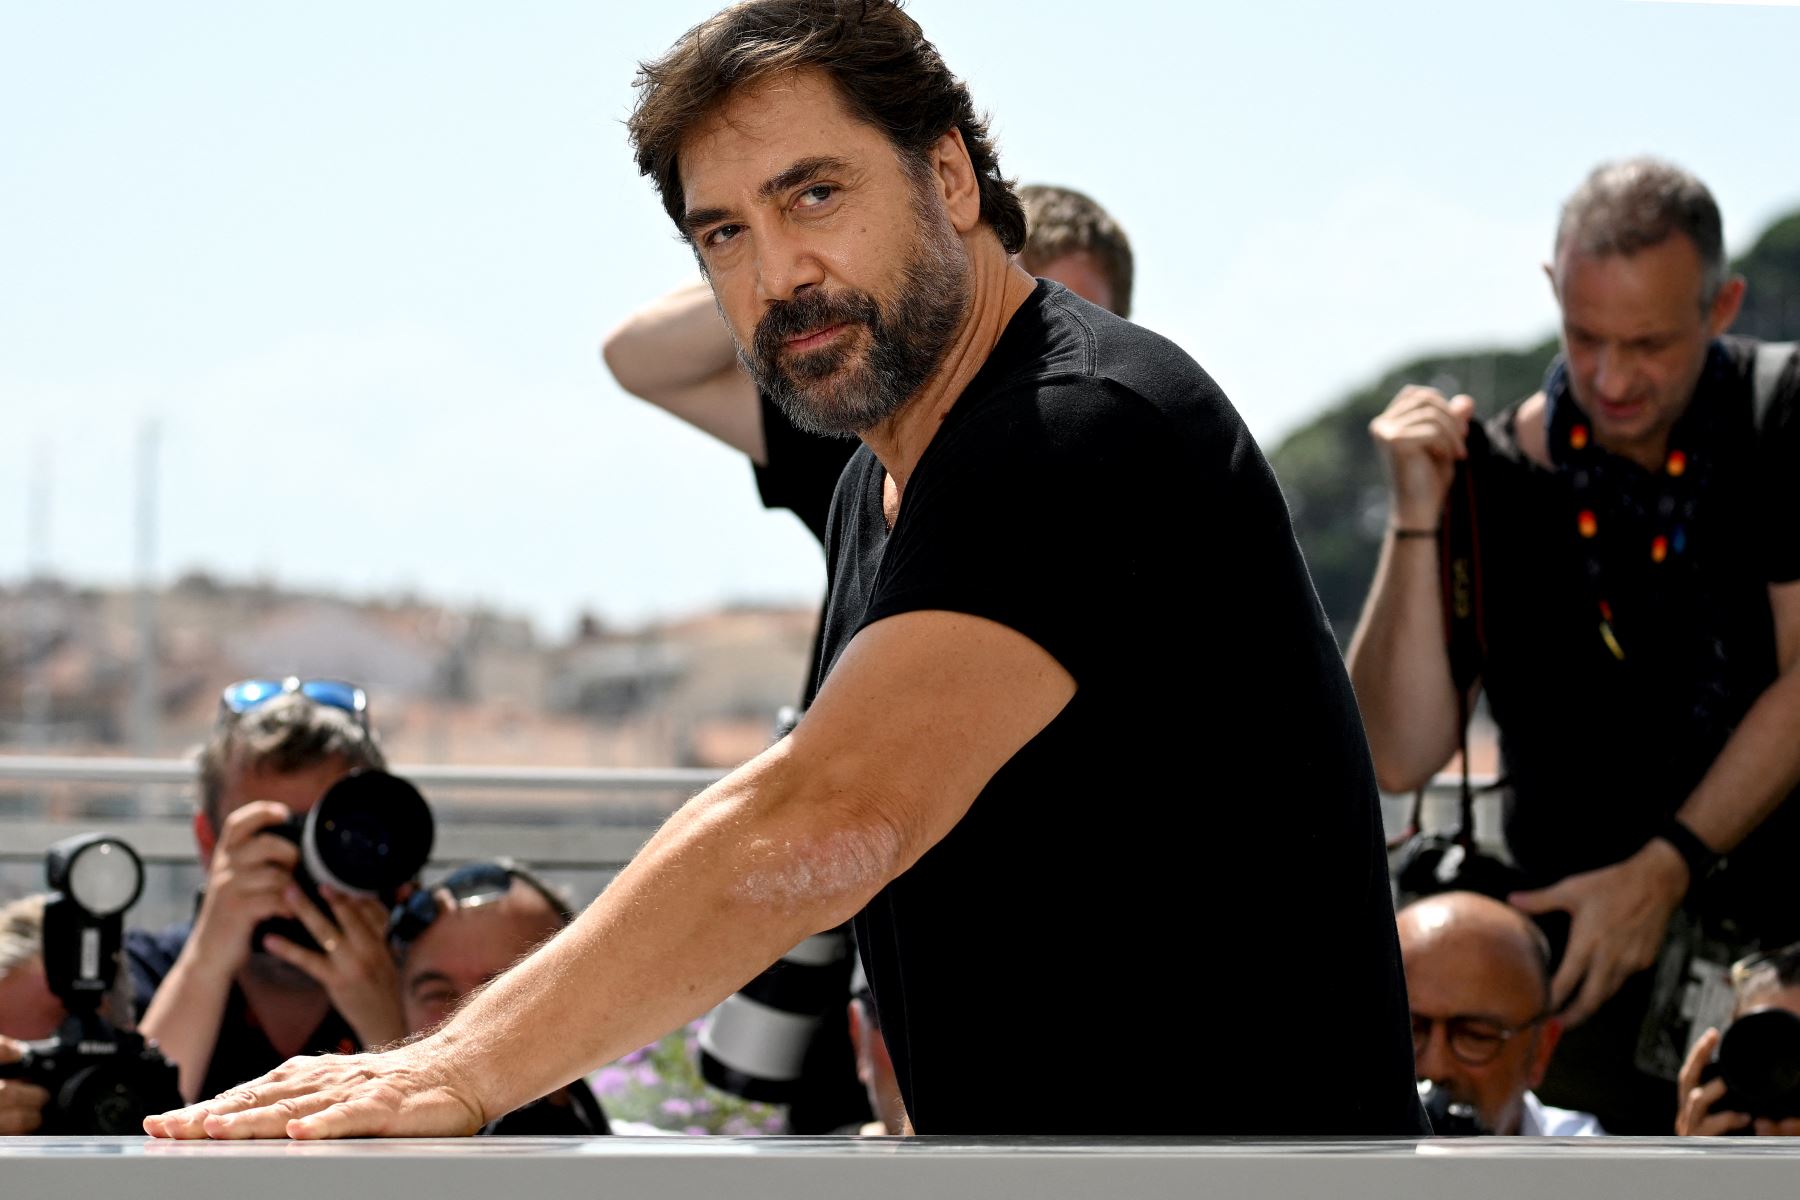 El primer actor español en ganar un Óscar, por su papel de un psicópata asesino en "No es país para viejos" (2007) de los hermanos Cohen, desgranó, entre bromas, algunas anécdotas de su filmografía. Foto: AFP